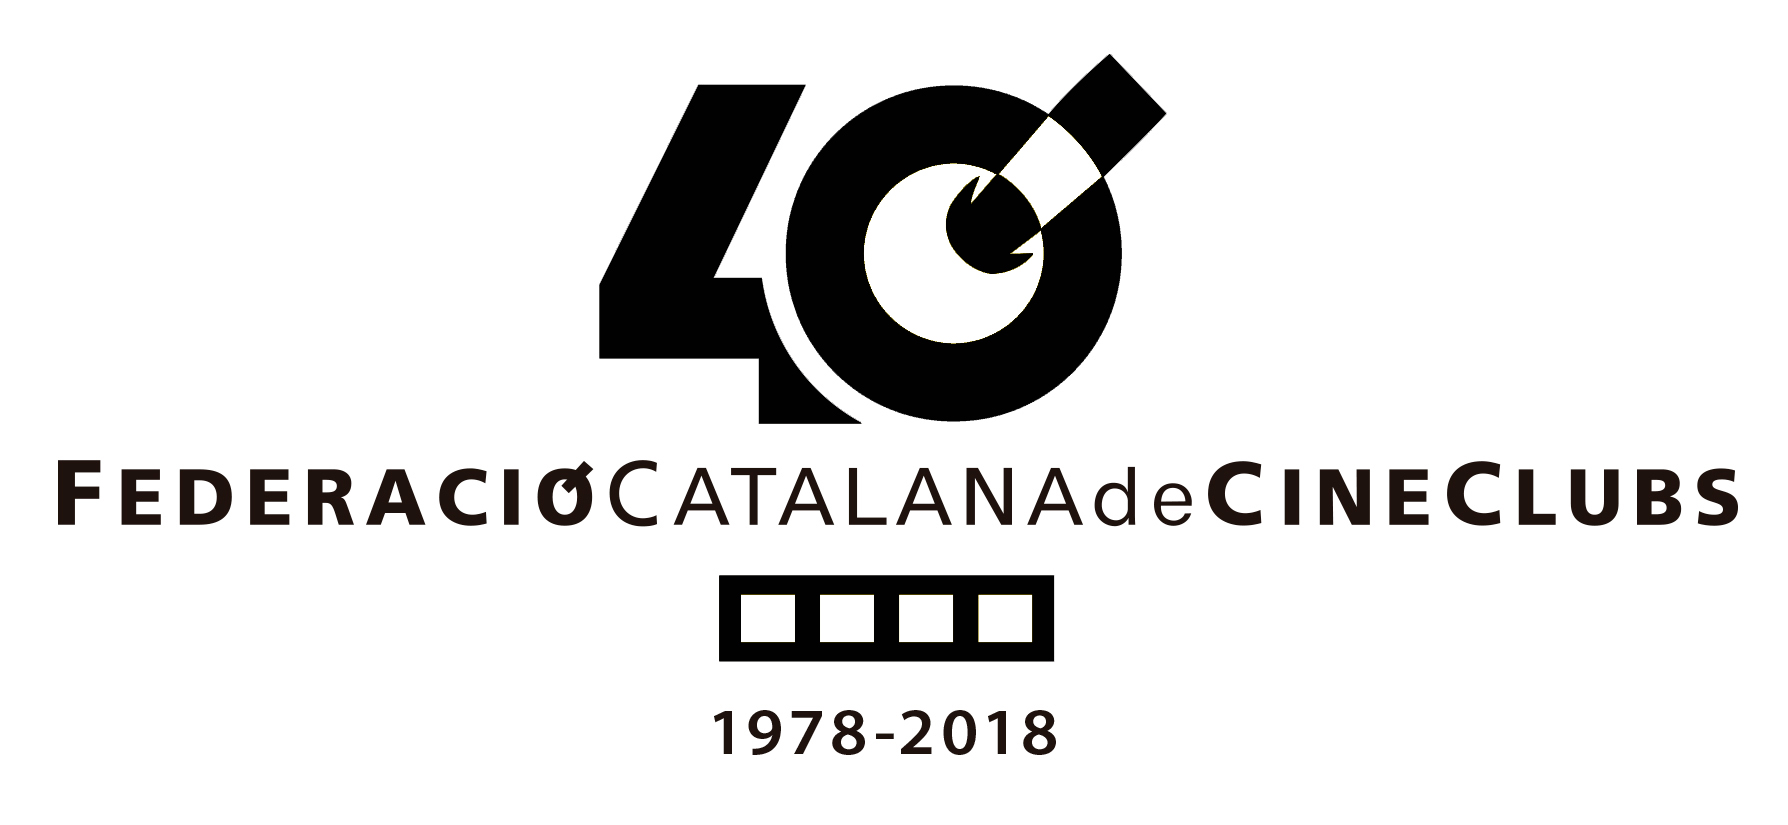 Federació Catalana de Cineclubs